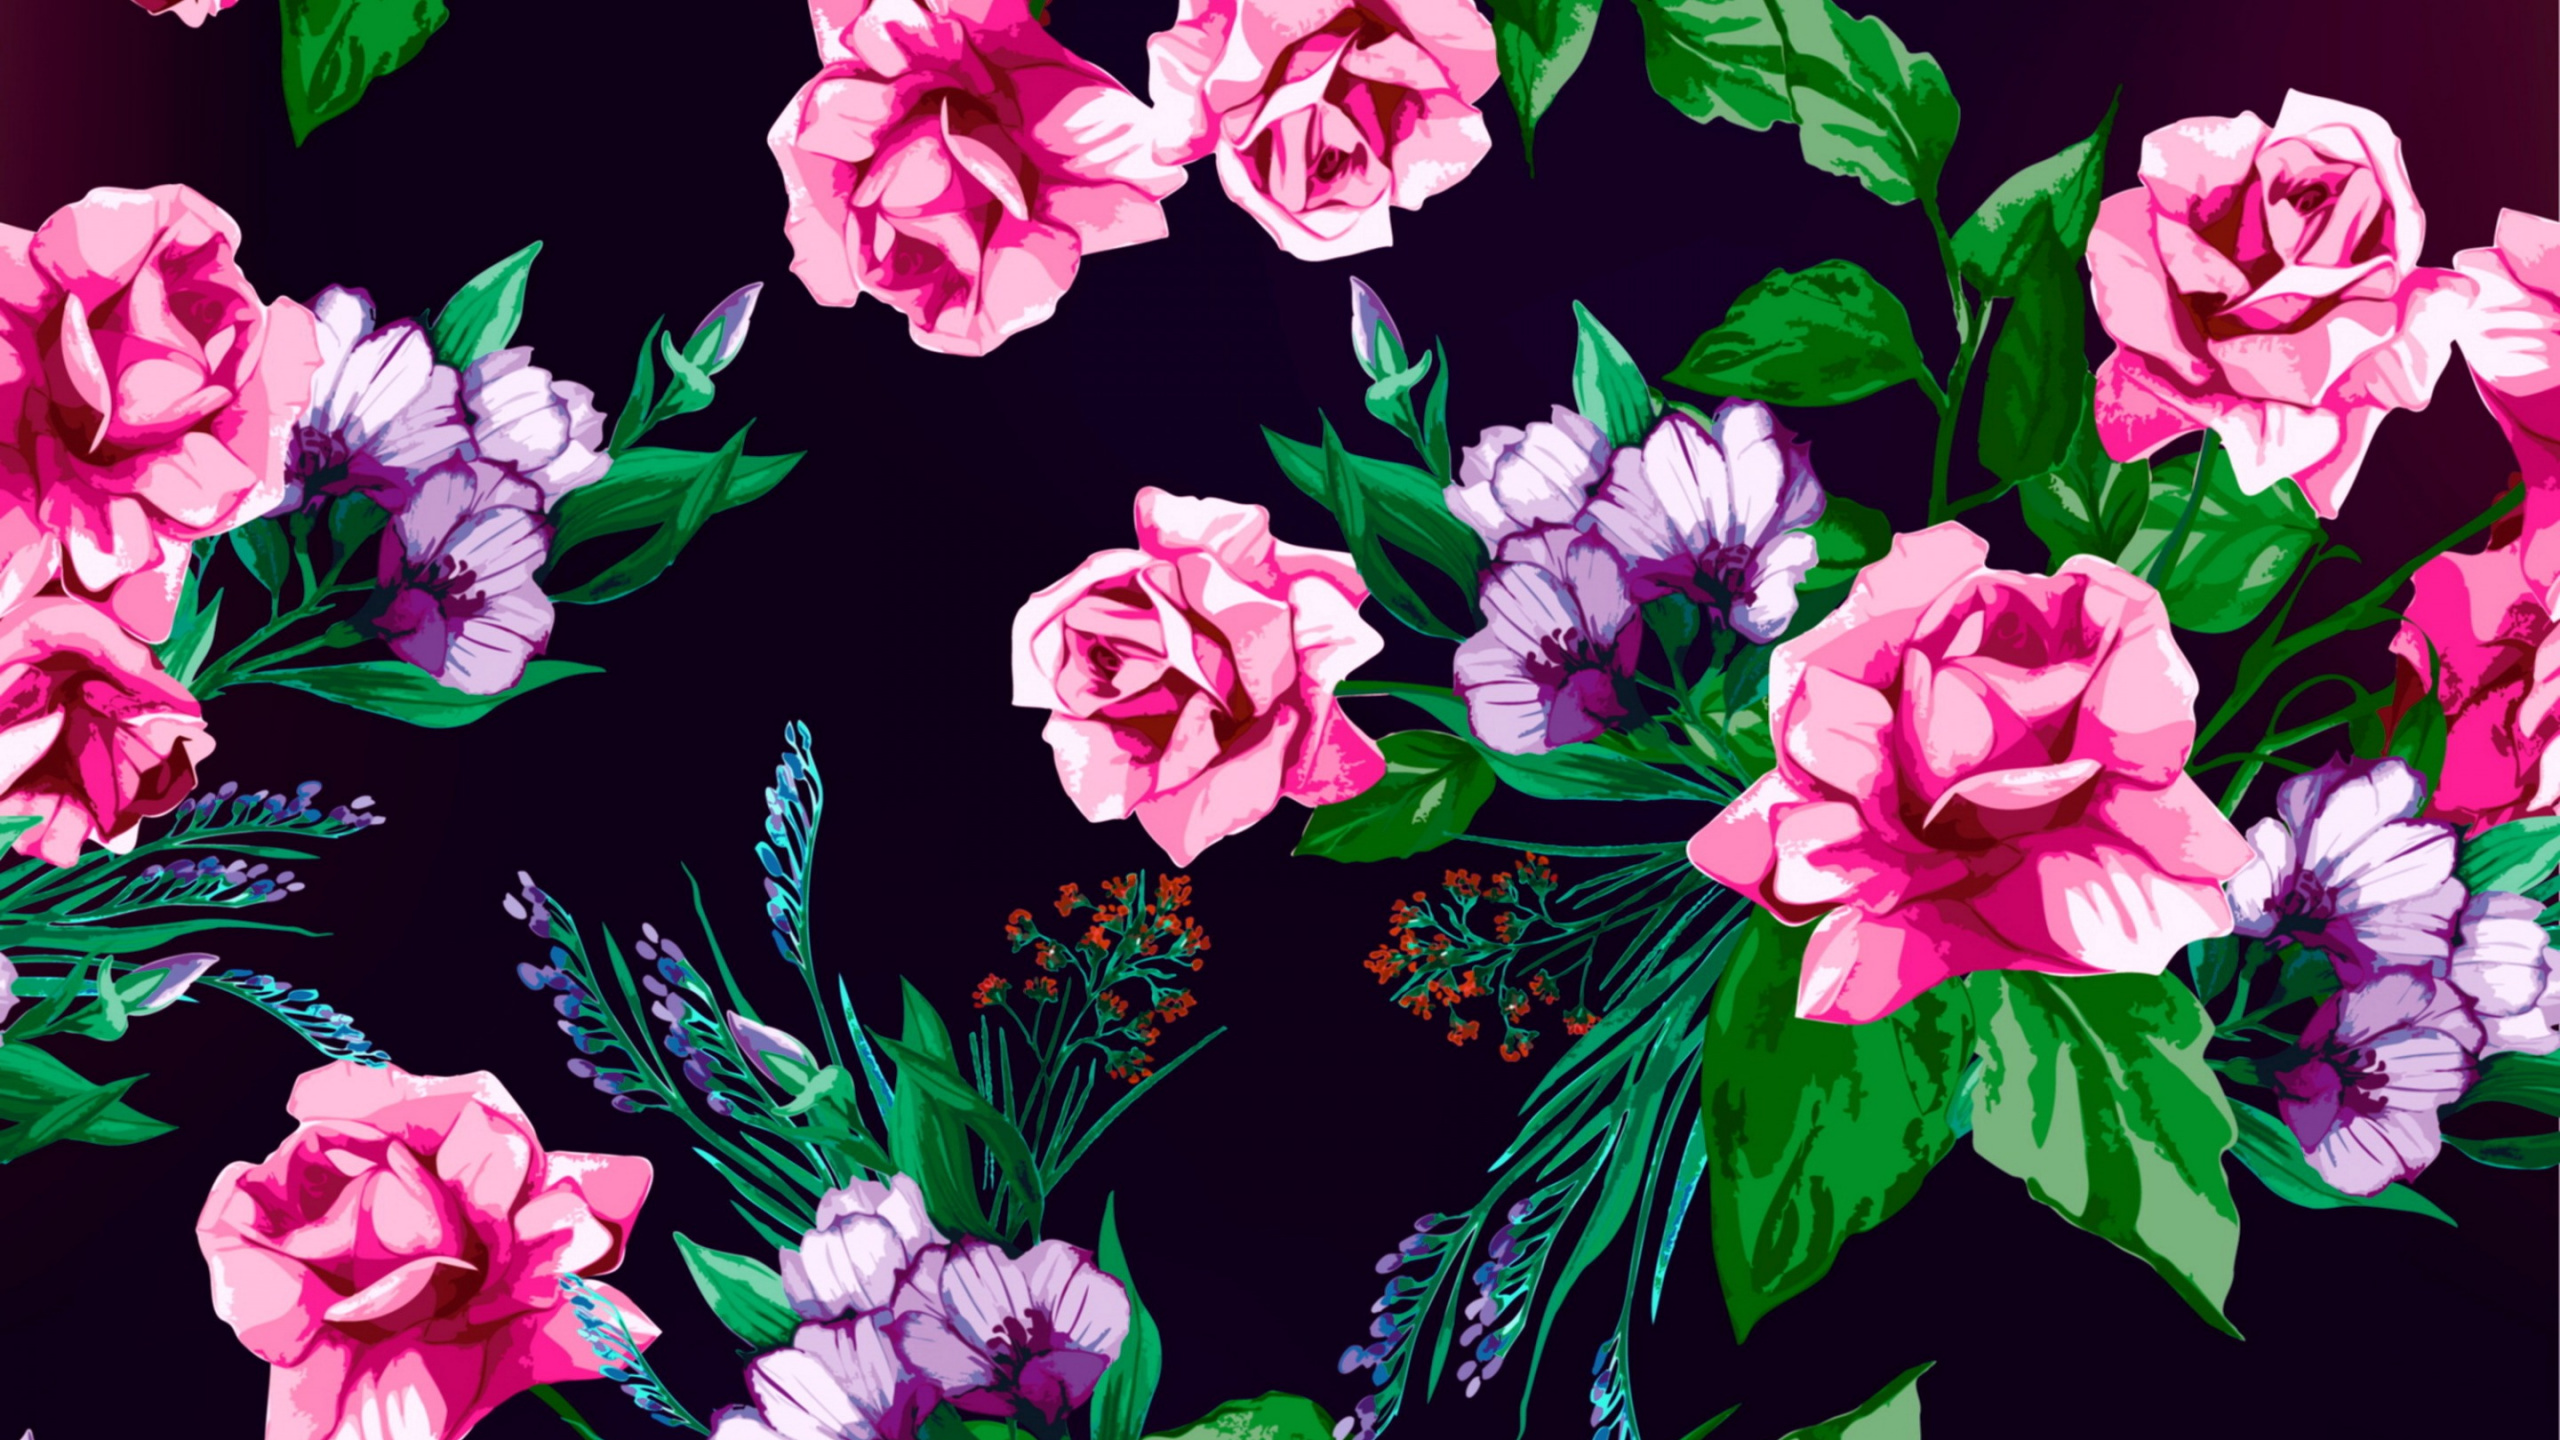 Flores Rosas y Blancas Con Hojas Verdes. Wallpaper in 2560x1440 Resolution